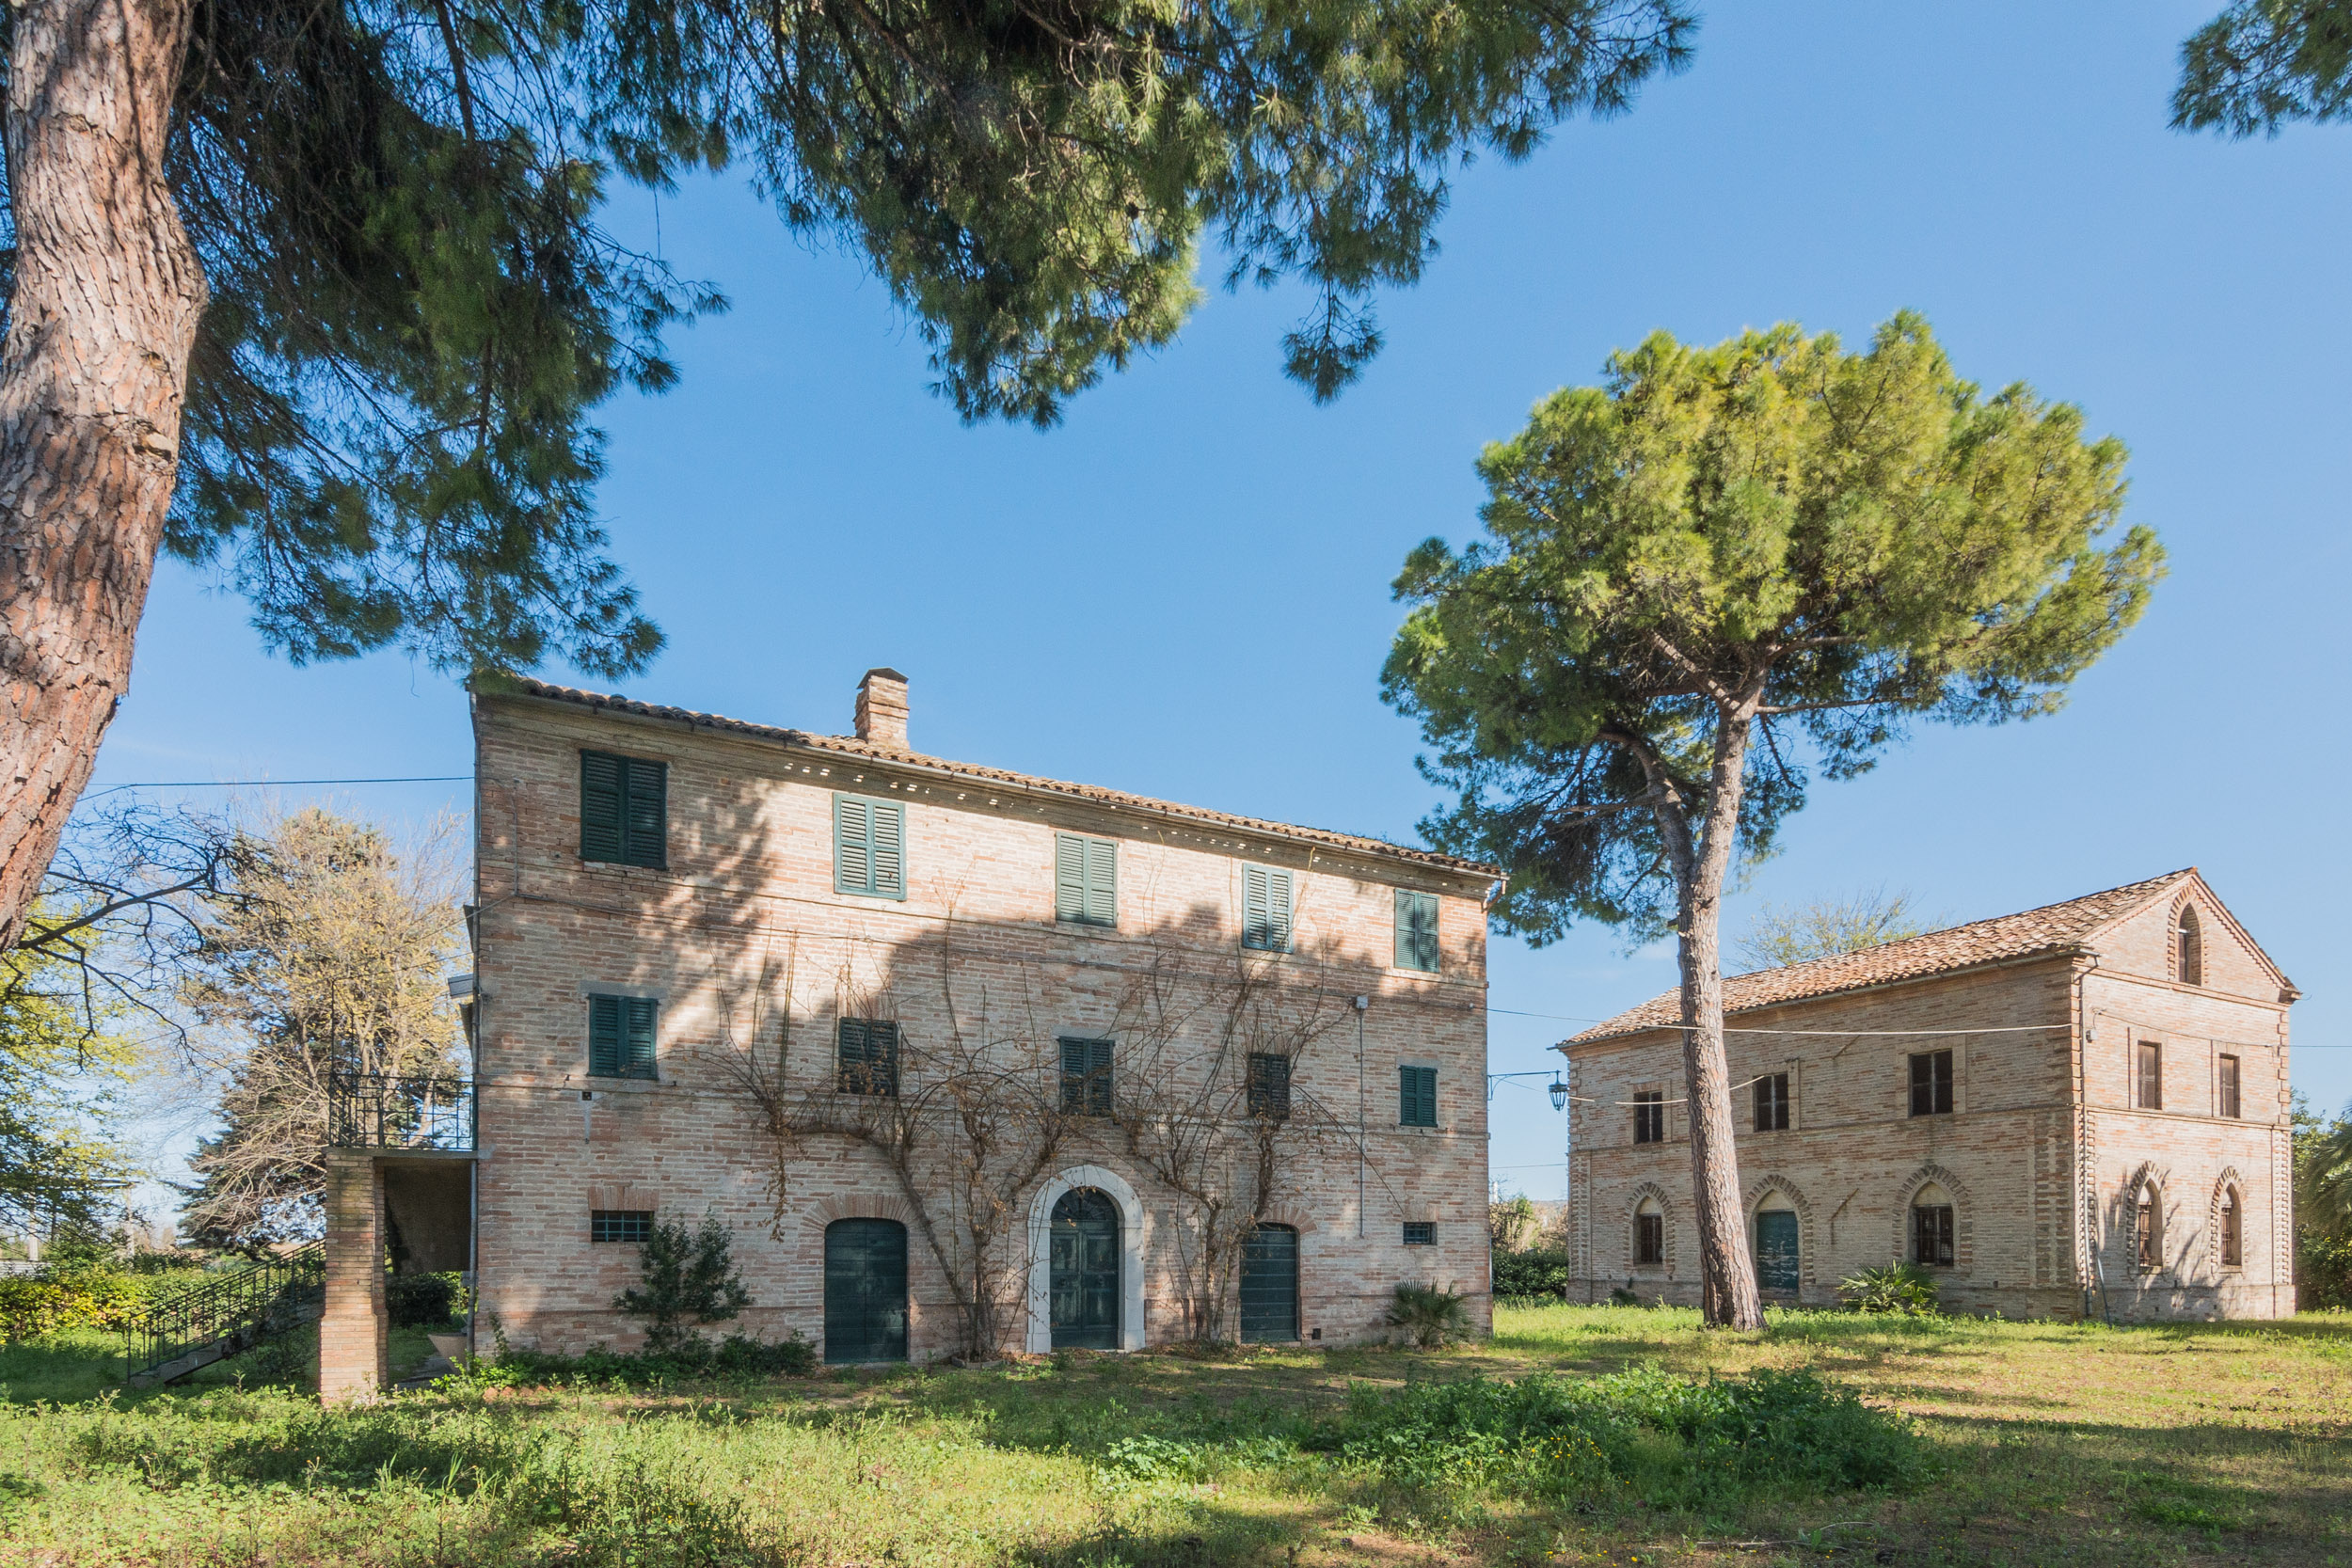 L'Agenzia Immobiliare puzielli propone prestigioso casale nobile in vendita nelle Marche